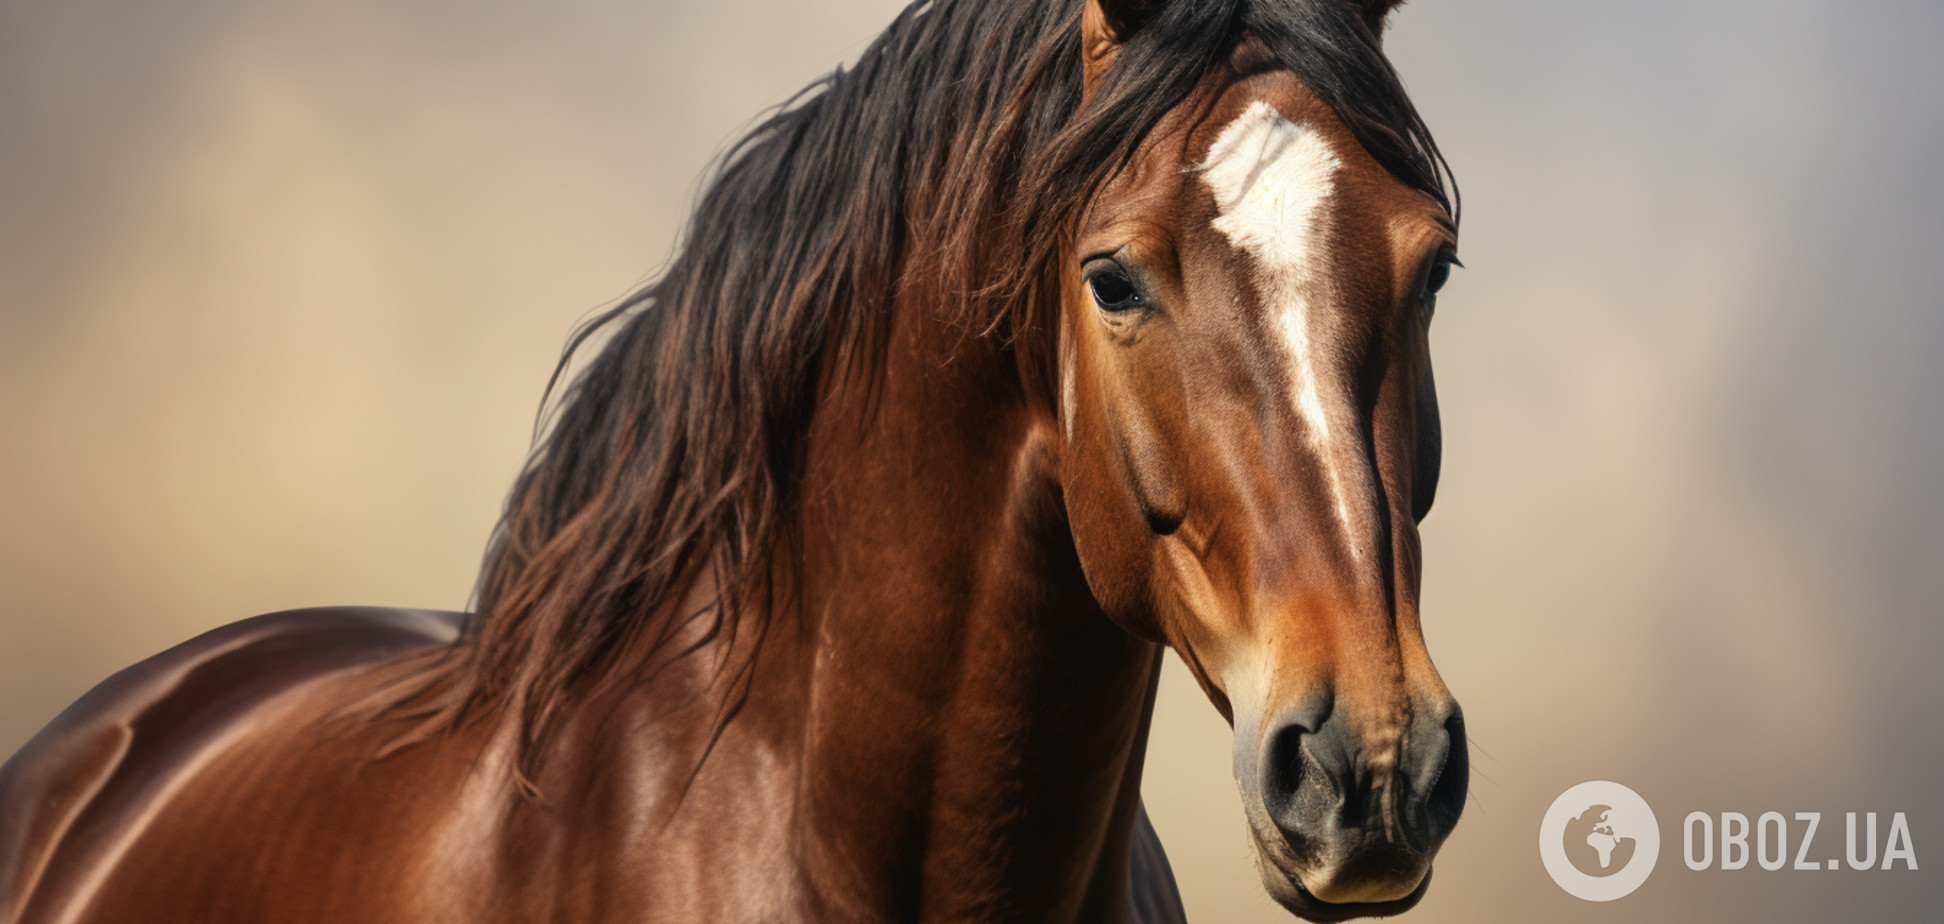 Чубарый и буланый: что означают украинские слова, описывающие лошадей